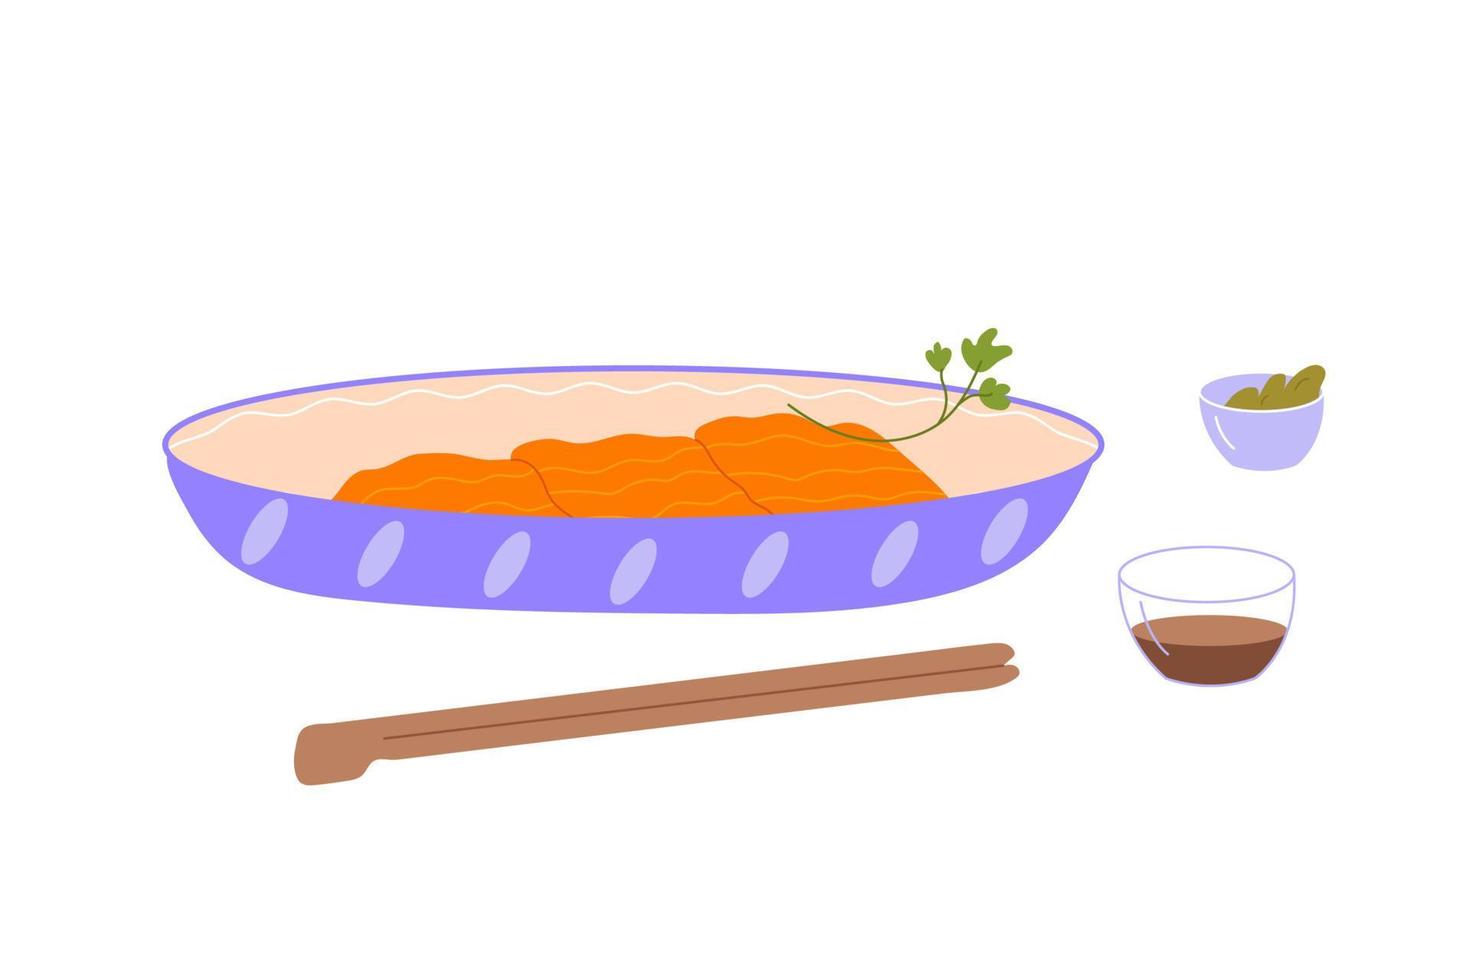 sashimi de salmón en un plato con salsa de soja, wasabi y palillos. rebanadas de plato de pescado rojo. composición de alimentos de japón. ilustración vectorial plana coloreada aislada sobre fondo blanco vector